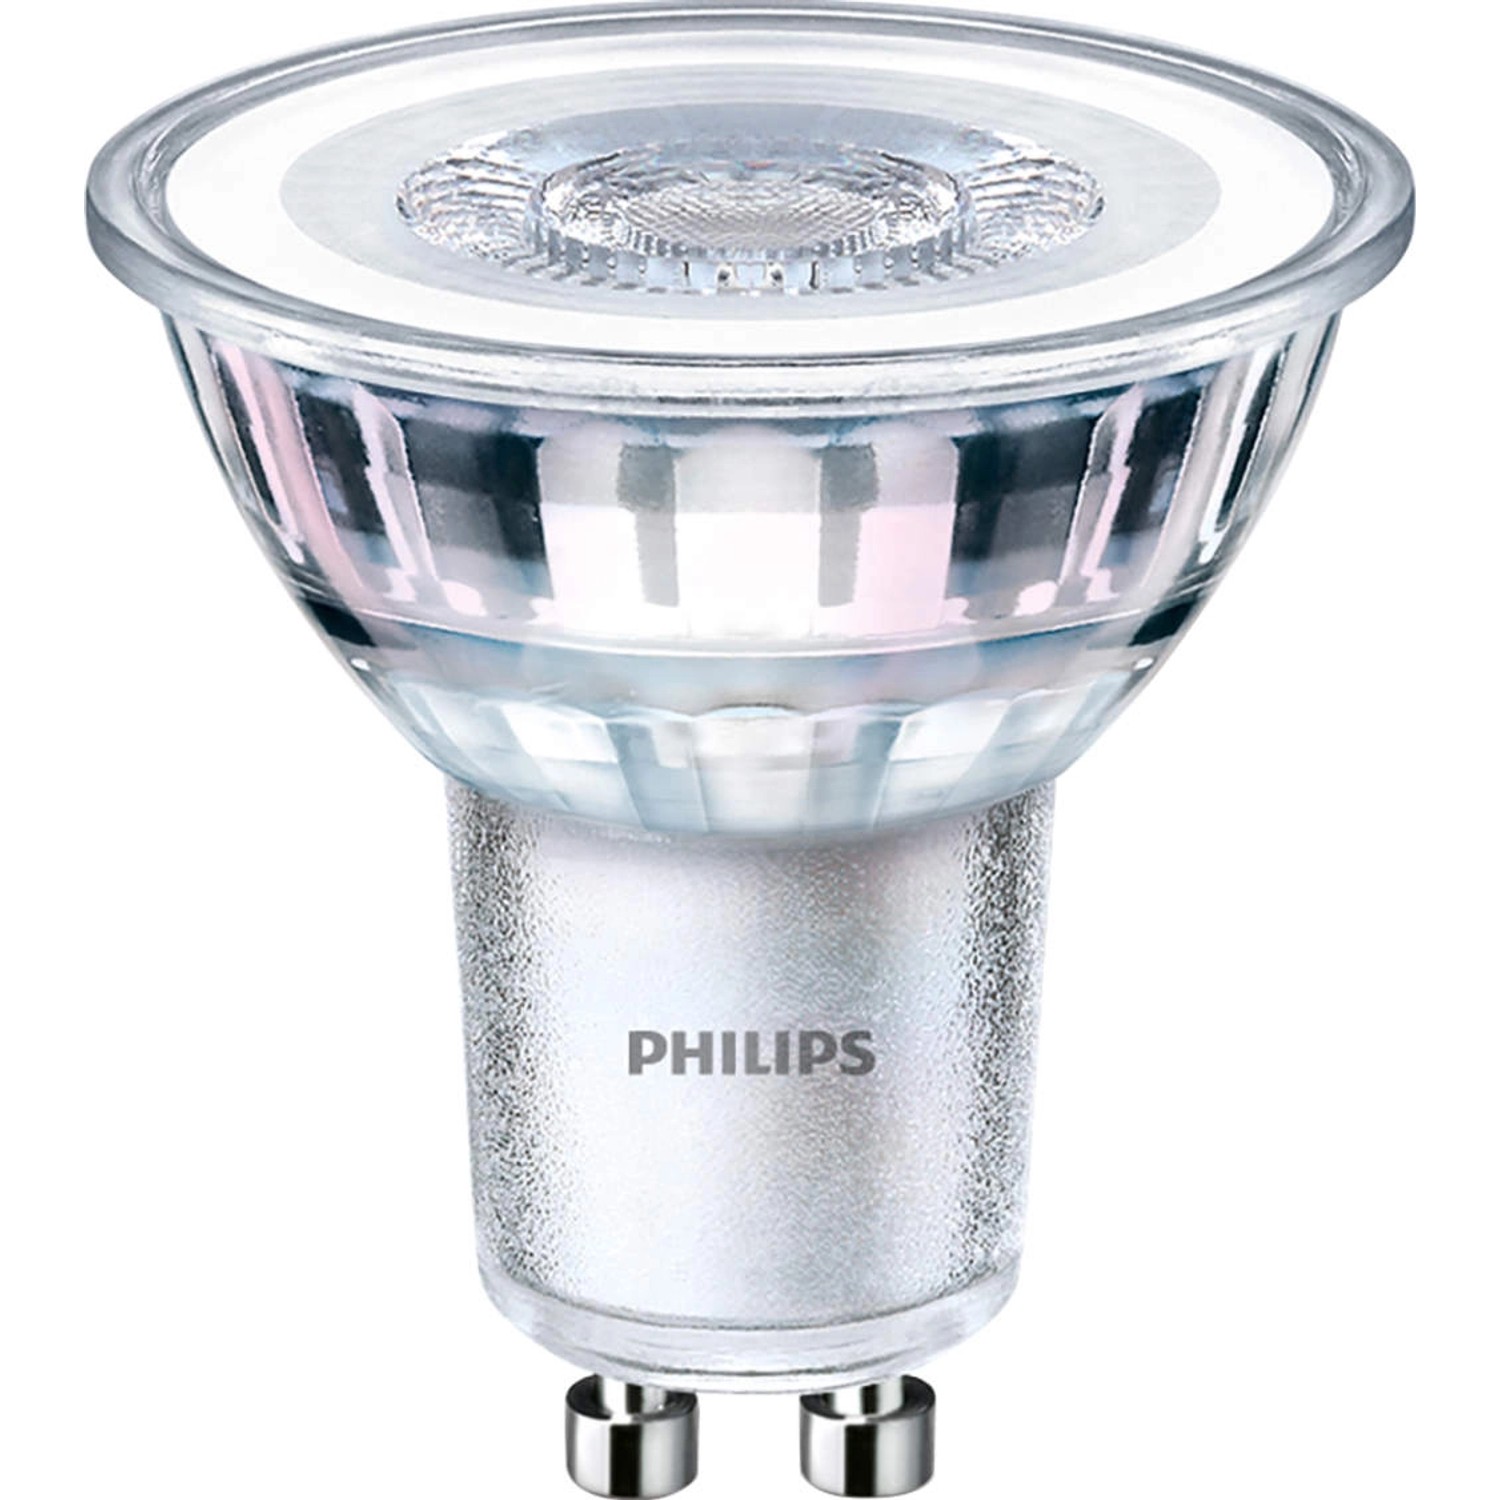 Philips LED-Leuchtmittel GU10 4,6 W Warmweiß 355 lm EEK: F 5,4 x 5 cm (H x Ø)